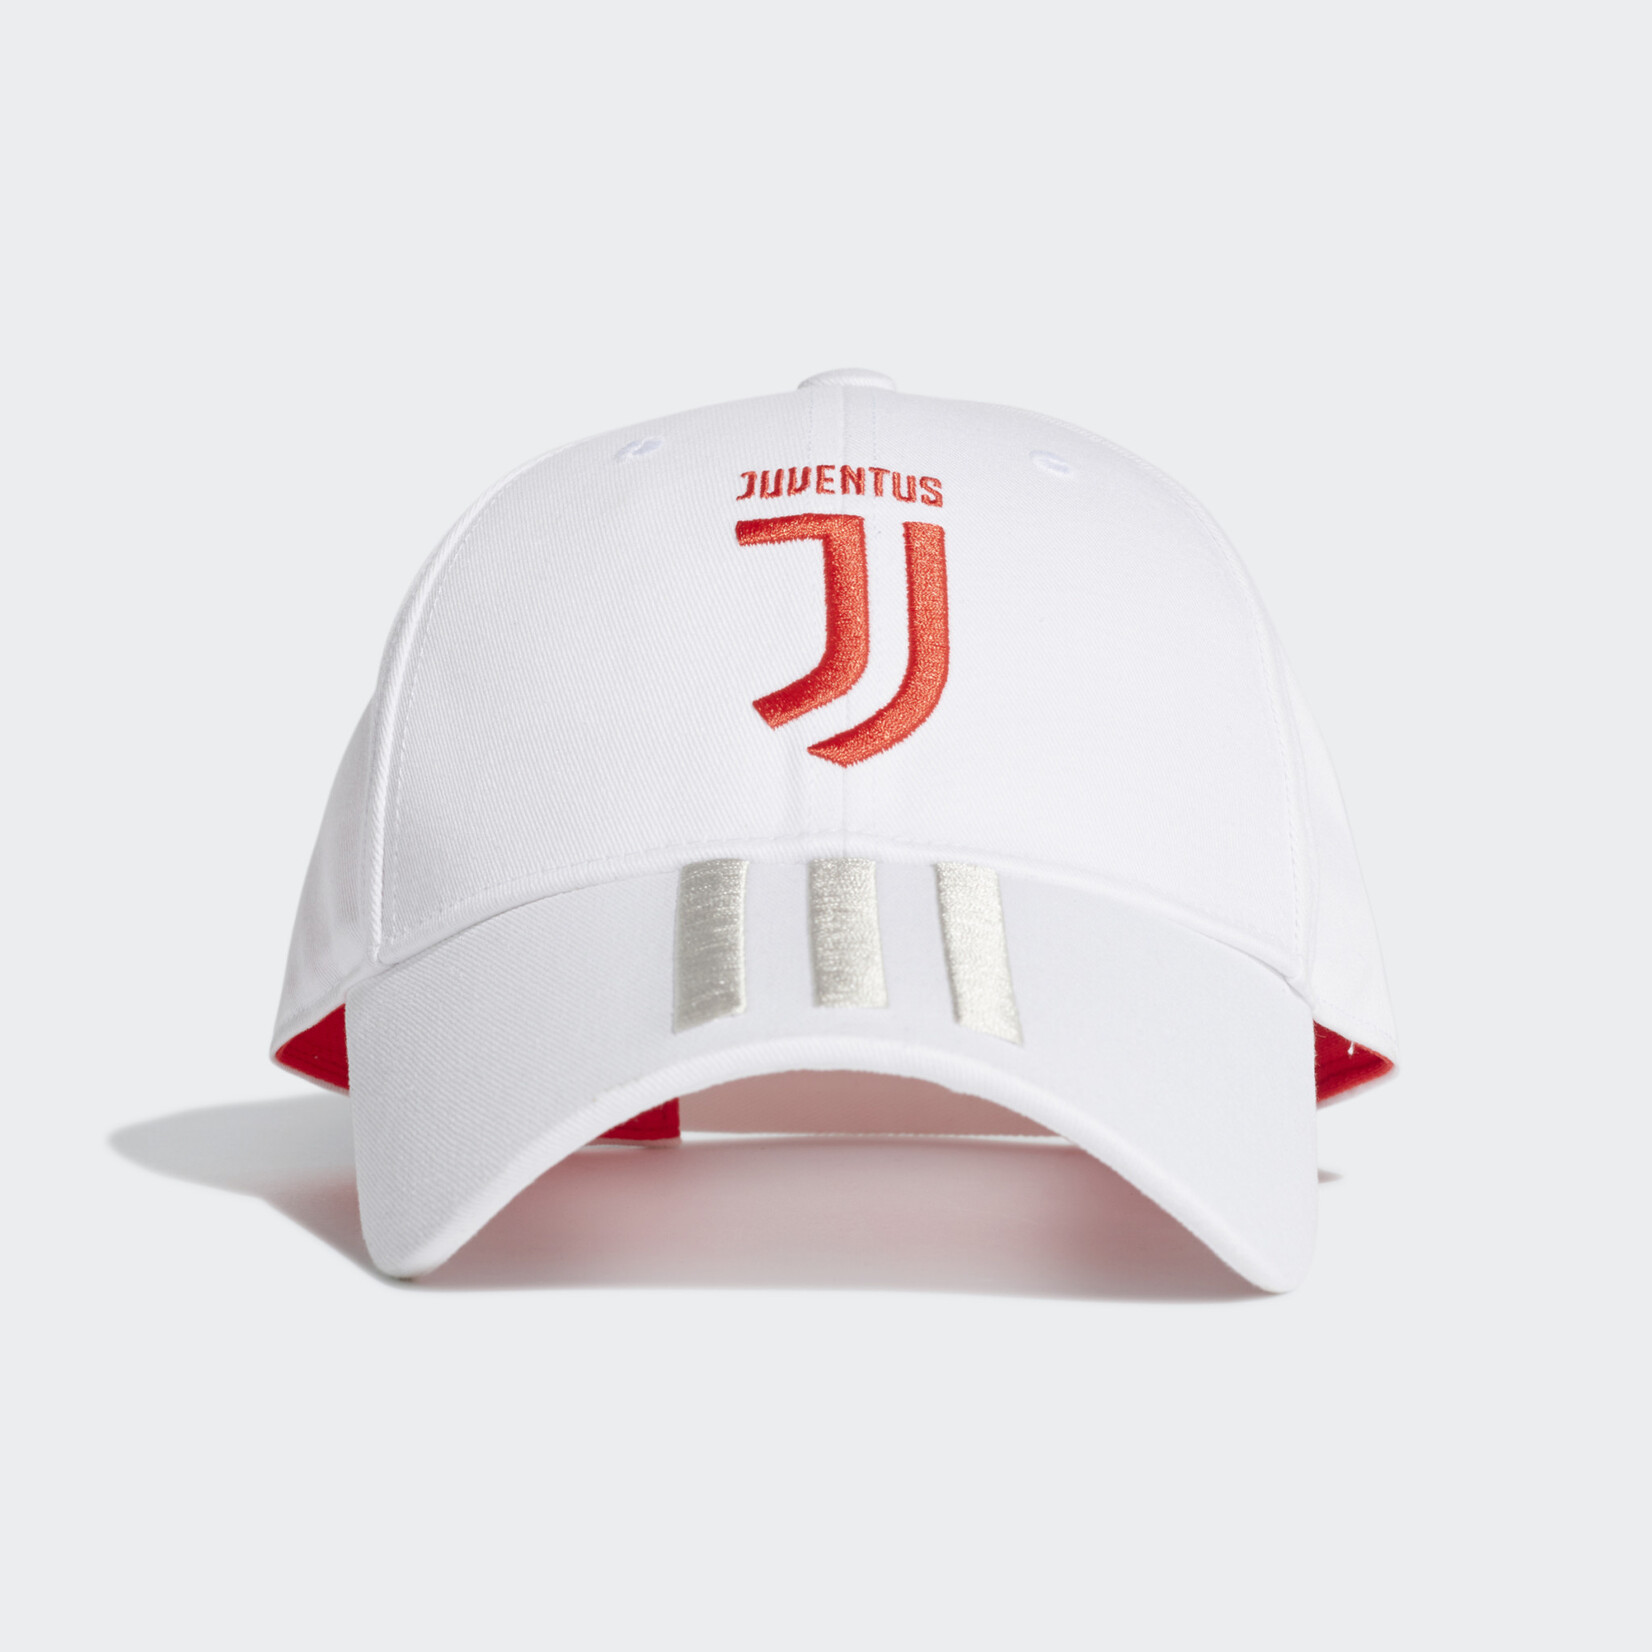 Adidas Juventus Cap - White